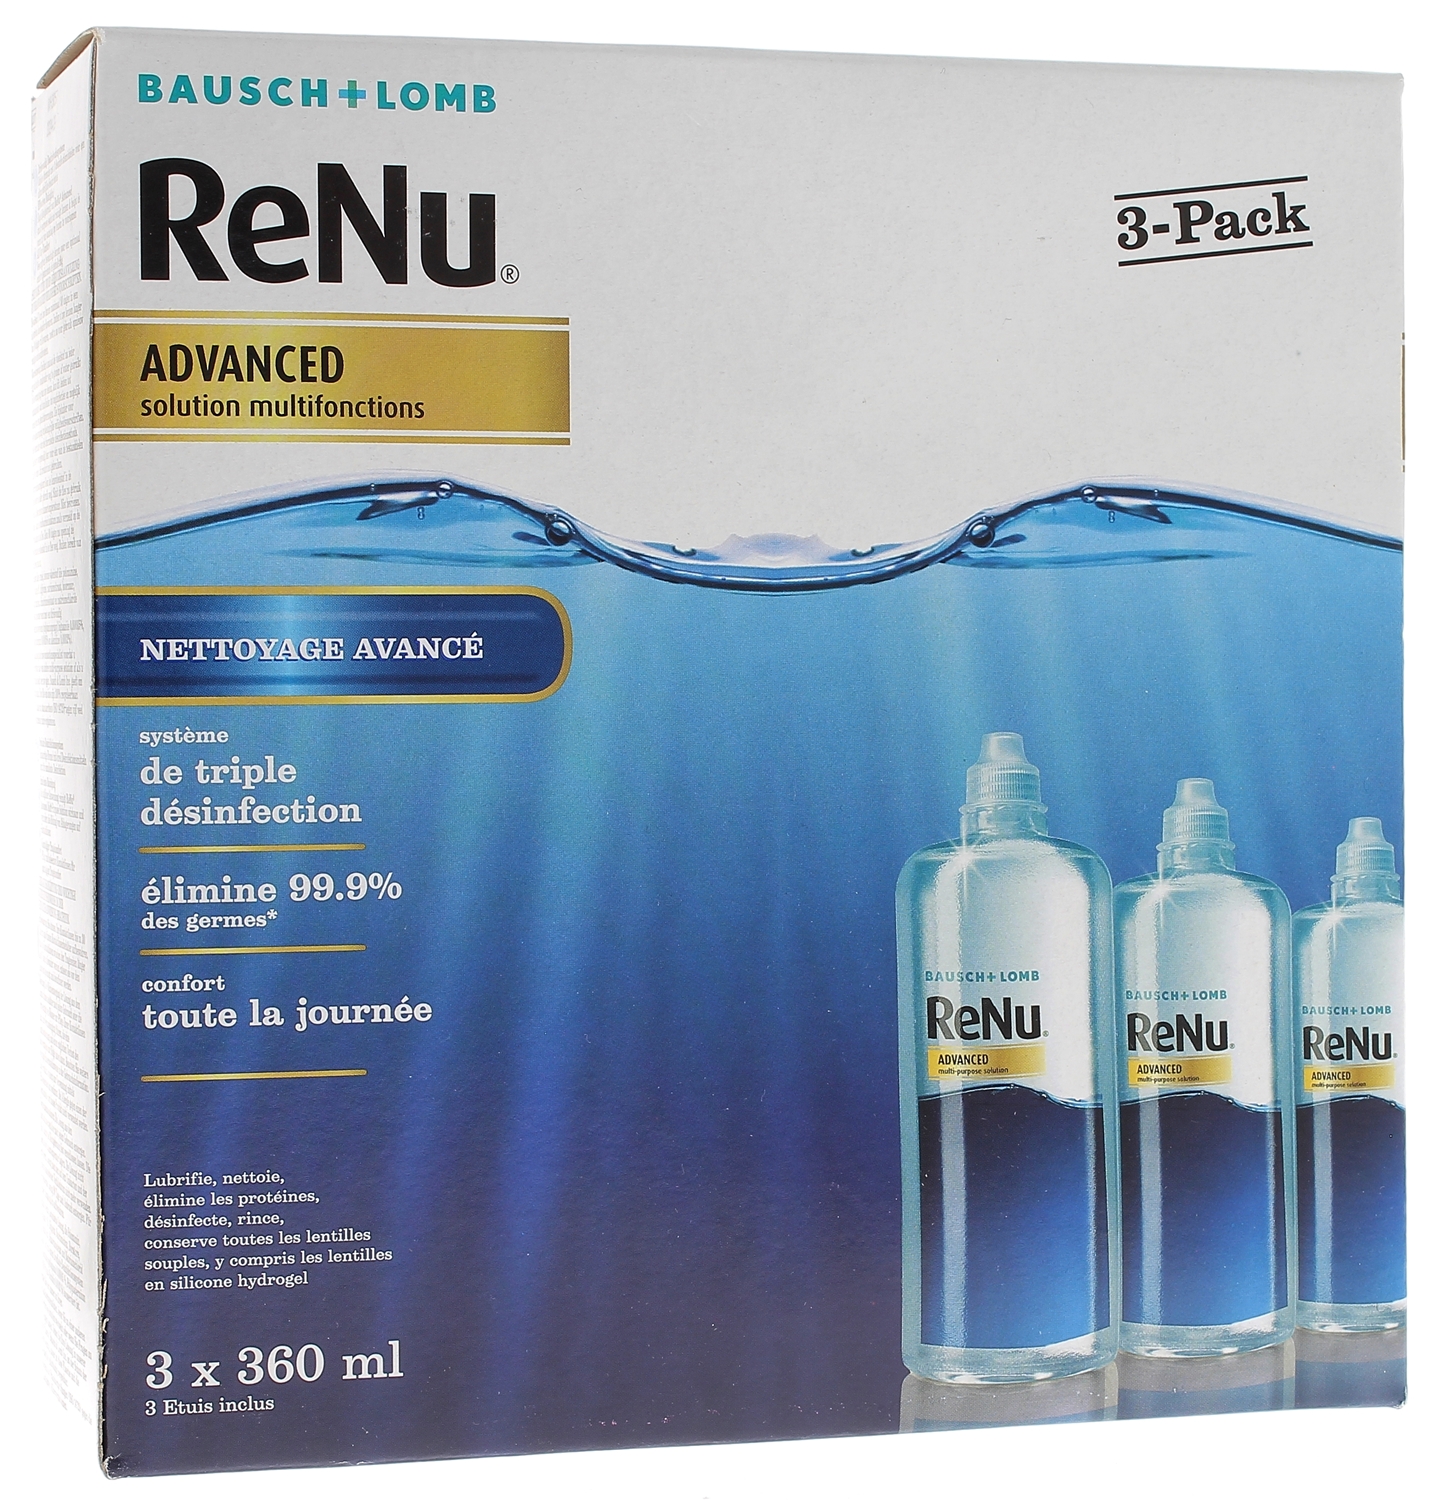 ReNu Advanced Solution lentilles multifonctions Bausch Lomb - lot de 3 flacons de 360 ml